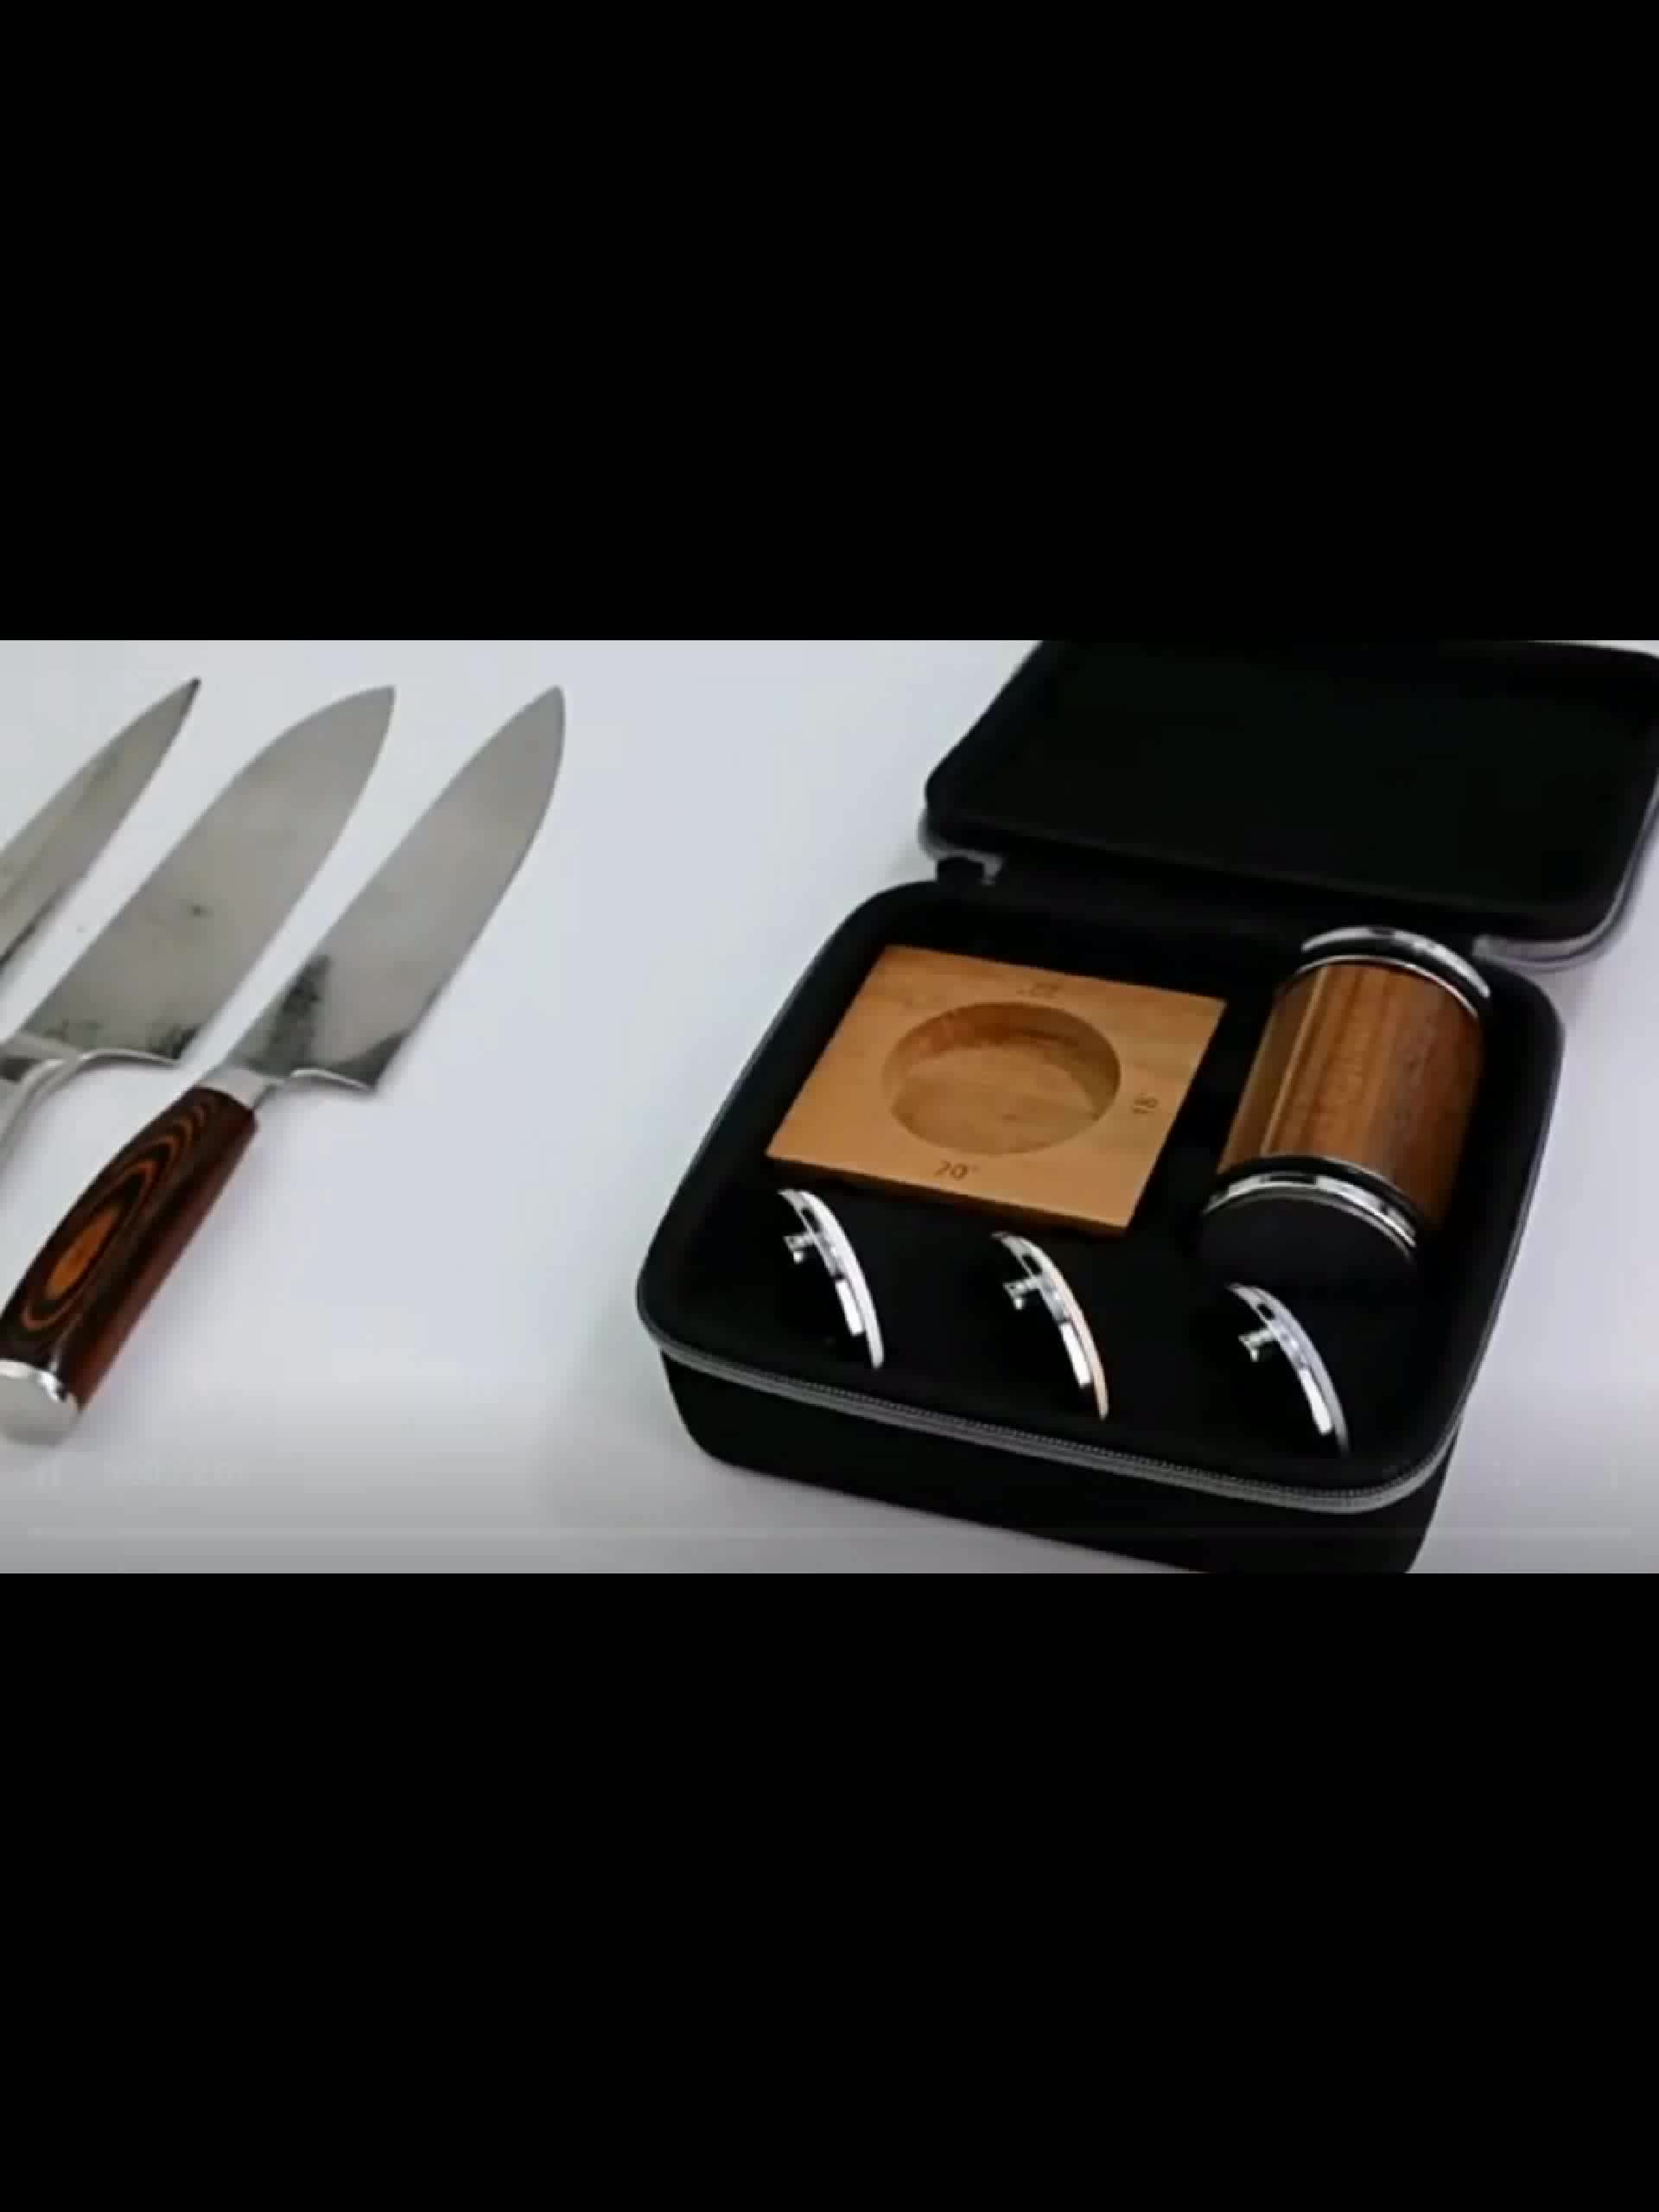 tumbler rolling knife sharpener 3 stage